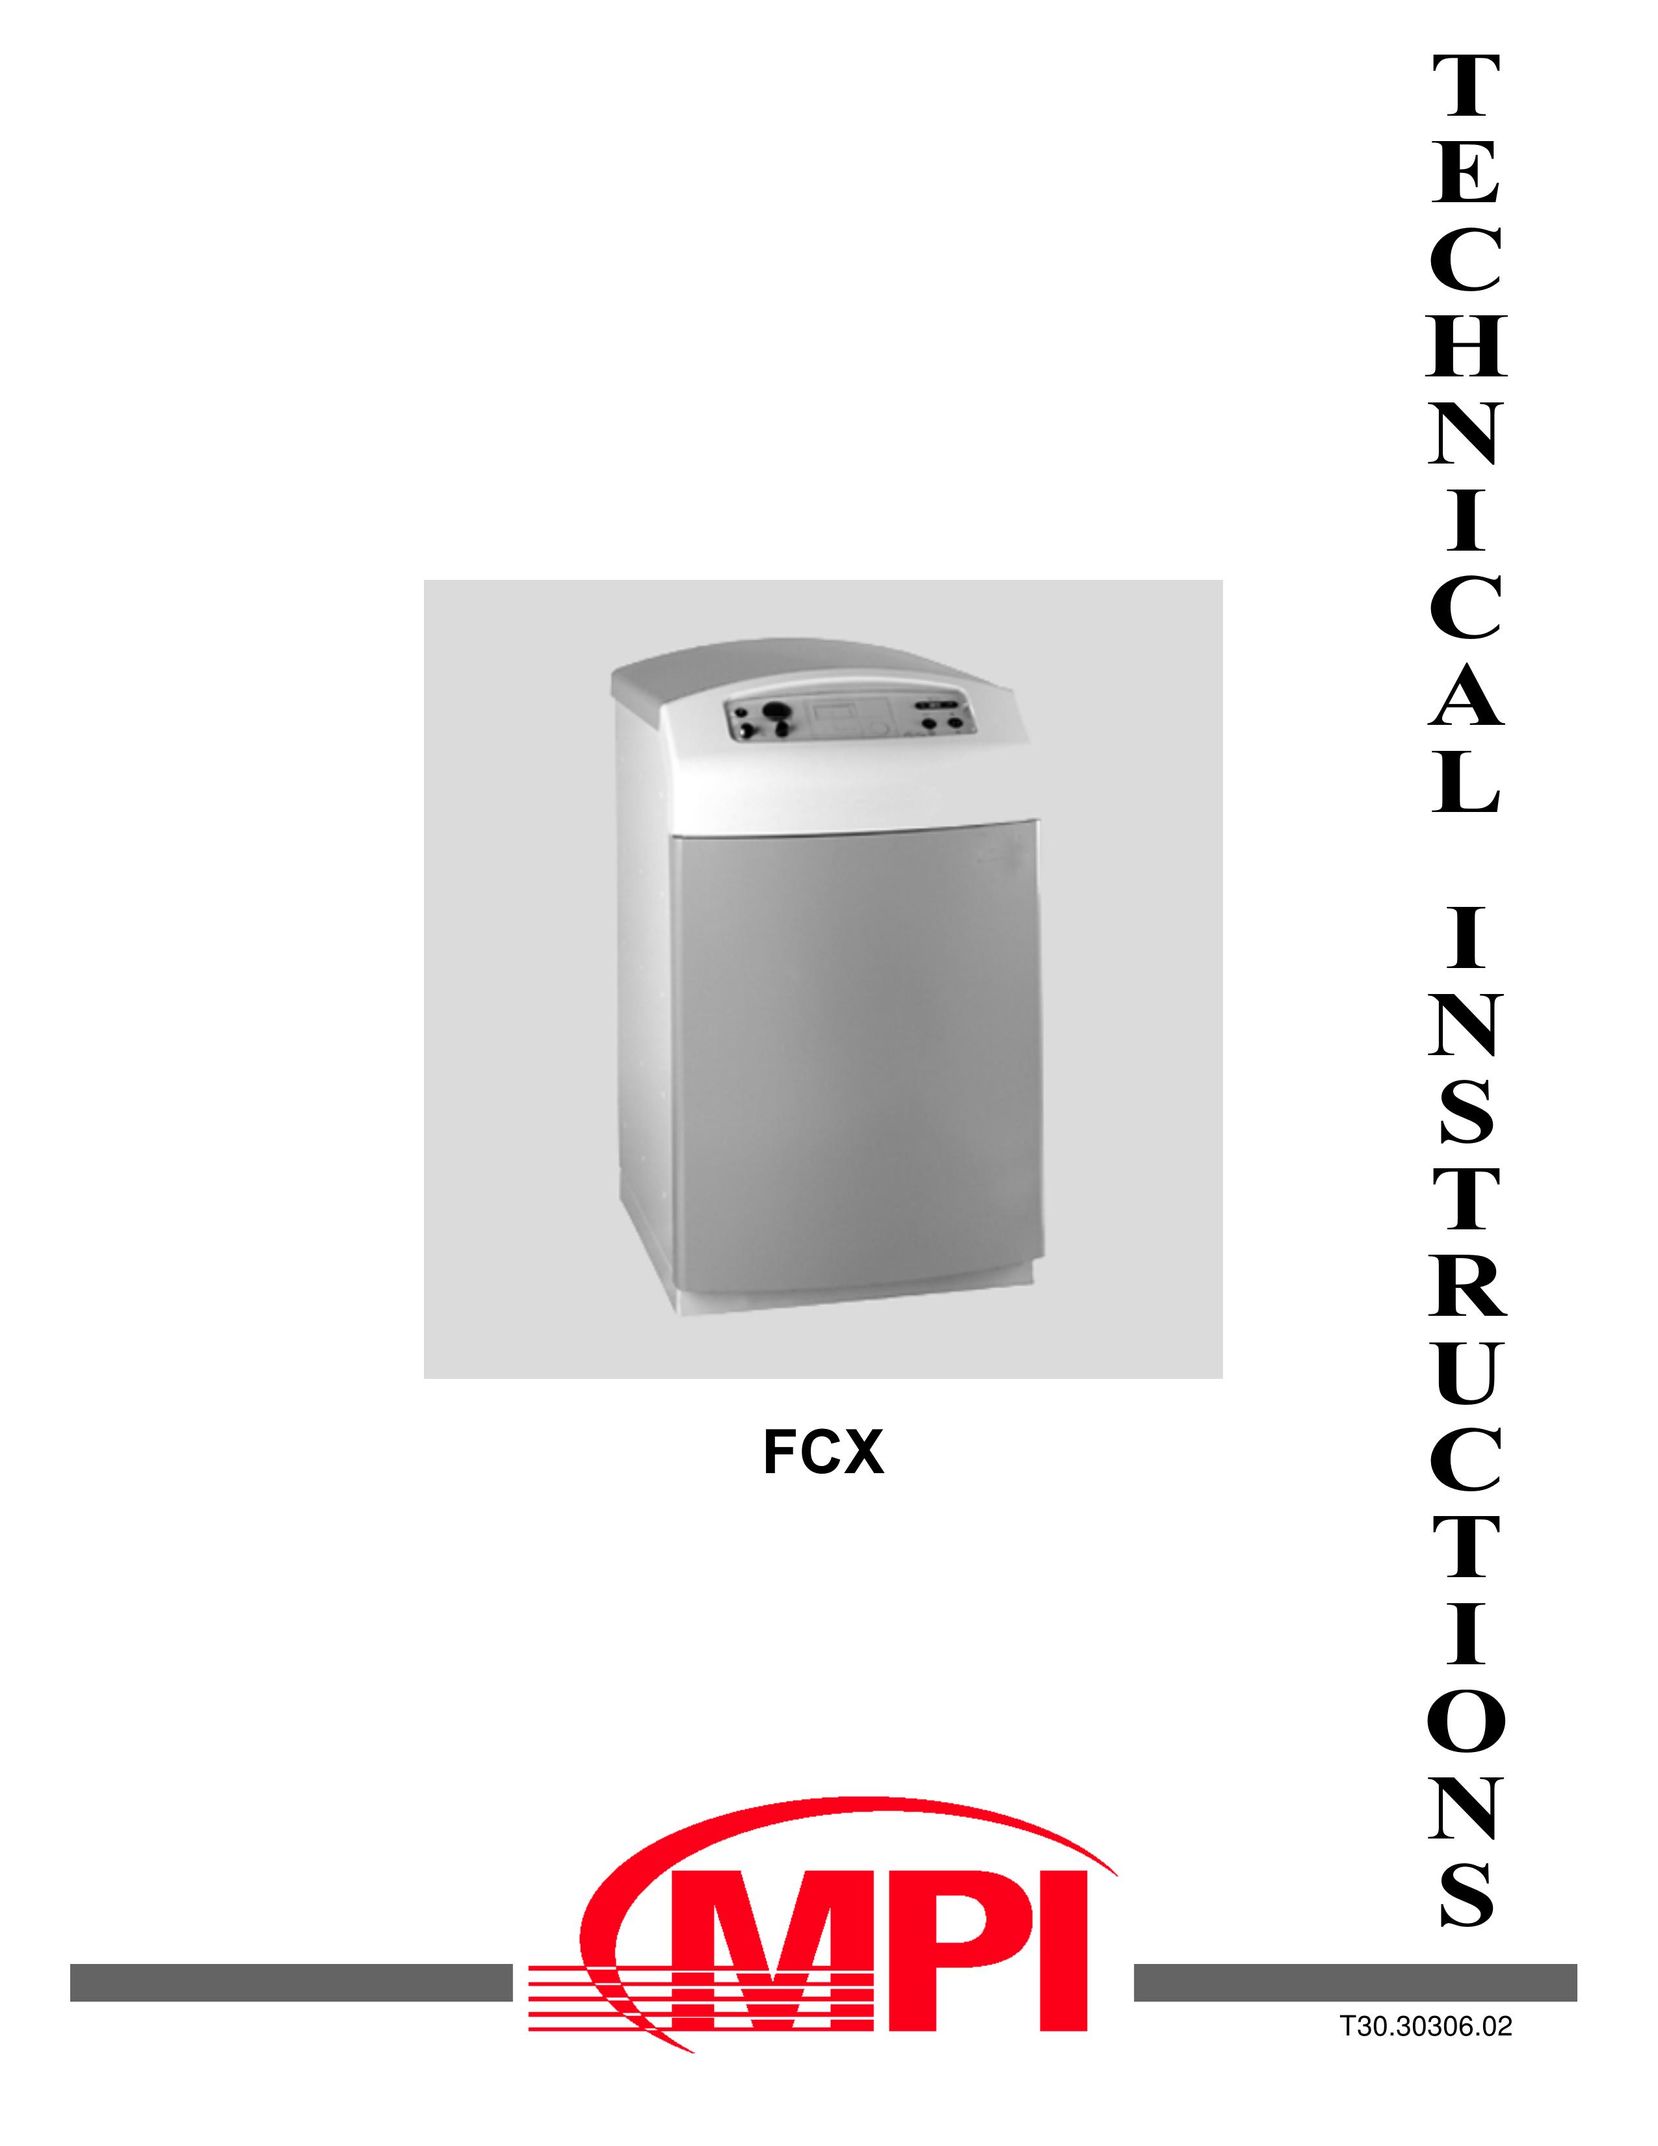 MPI Technologies FCX Boiler User Manual